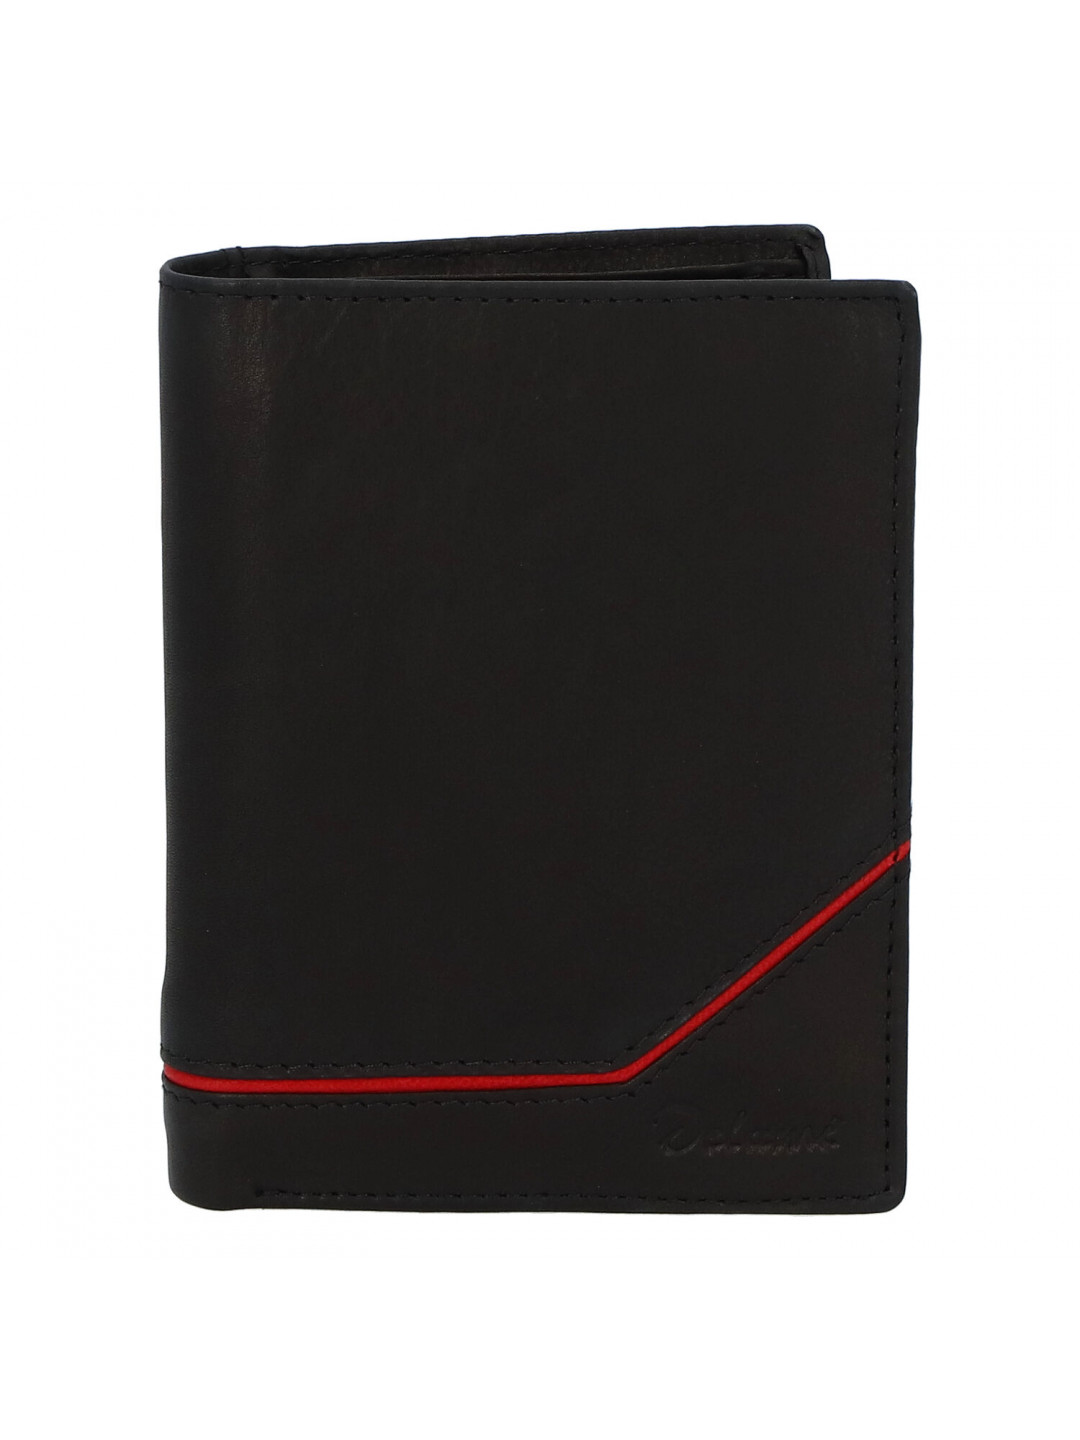 Pánská kožená peněženka černá – Delami Maast 2